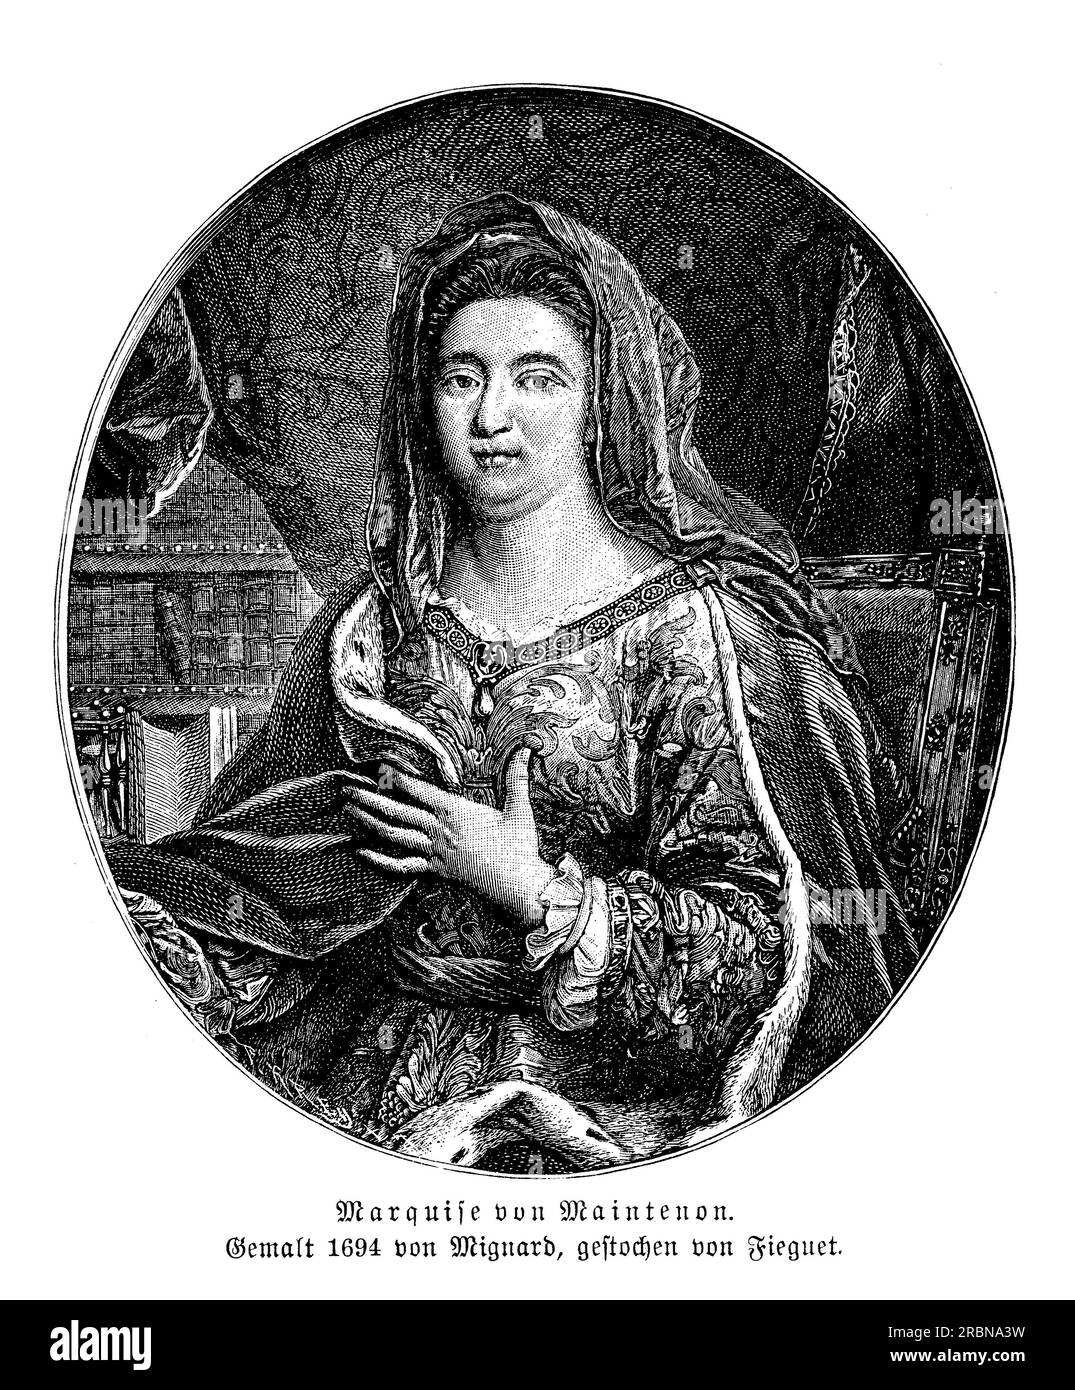 Portrait der Marquise von Maintenon, geboren Francoise d'Aubigné, zweite Ehefrau von König Ludwig XIV. Von Frankreich. Sie war eine enge Vertrautin des Königs und übte während seiner Herrschaft erheblichen politischen Einfluss aus. Maintenon ist auch bekannt für ihre Philanthropie und ihre Gründung des Maison royale de Saint-Louis, einer Schule für die Ausbildung armer Edelmädchen. Trotz ihrer vielen Leistungen war Maintenon nicht universell populär, und ihr Einfluss auf den König wurde oft kritisiert. Nach dem Tod des Königs zog sie sich in ein Kloster zurück, wo sie ihre philanthropische Arbeit fortsetzte Stockfoto